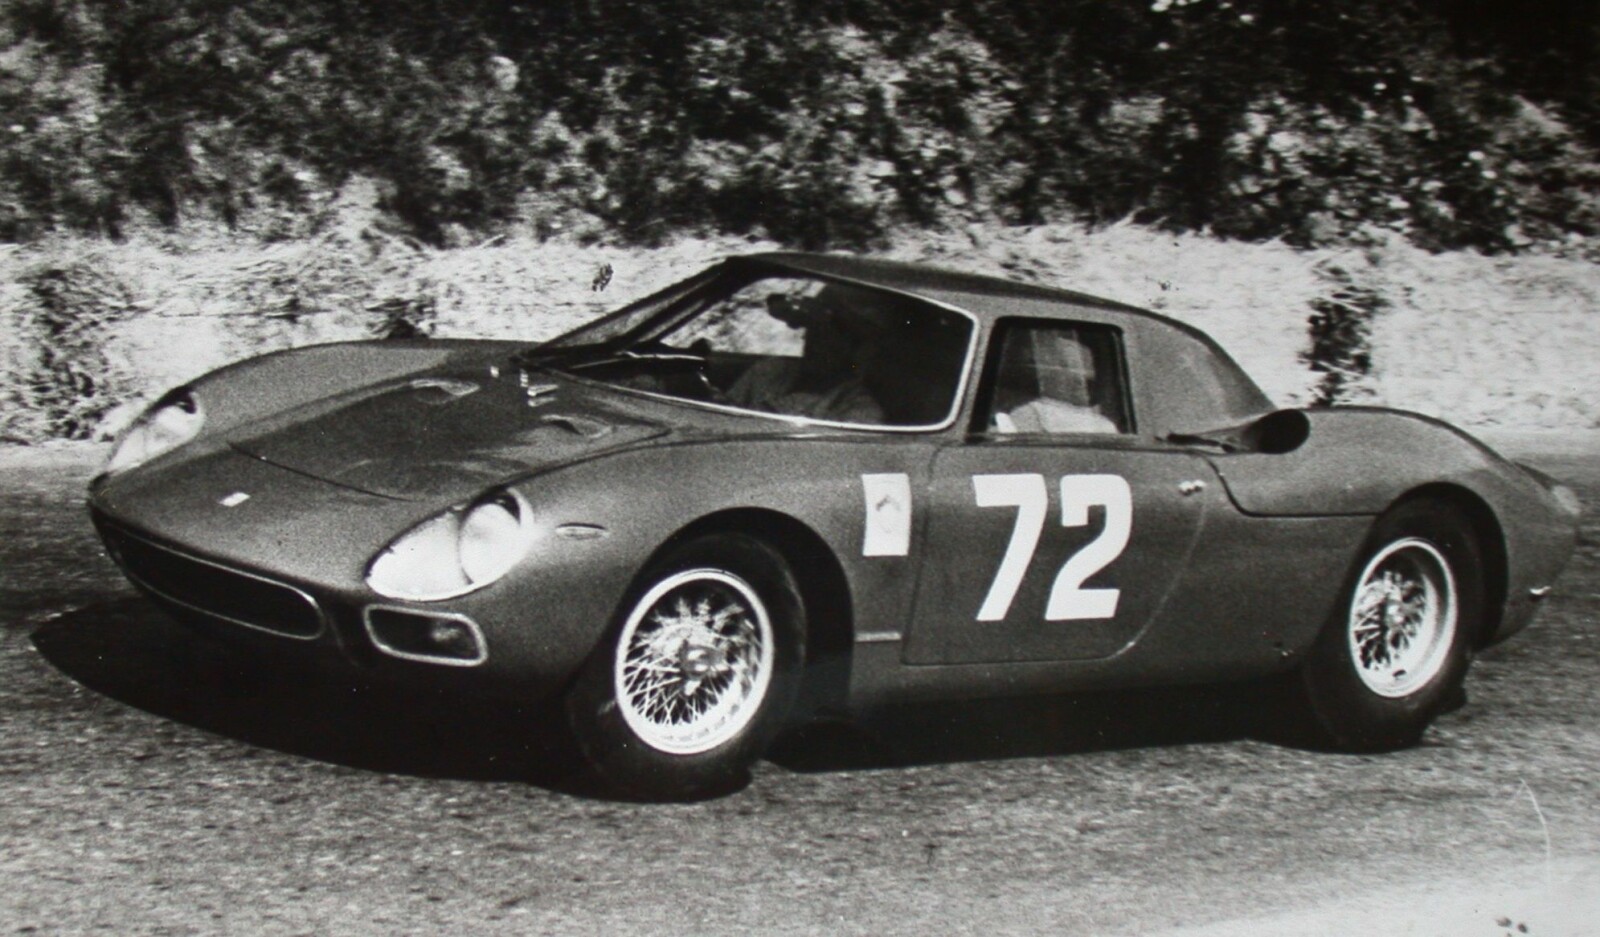 <b>VERDITRANSPORT:</b> I 2015 ble en 1964-modell Ferrari 240 LM solgt for cirka 158 millioner kroner. På bildet ser du Lodovico Scarfiotti kjøre en Ferrari 250 LM inn til seier i motbakkeløpet Sierra Montana Crans i 1964.